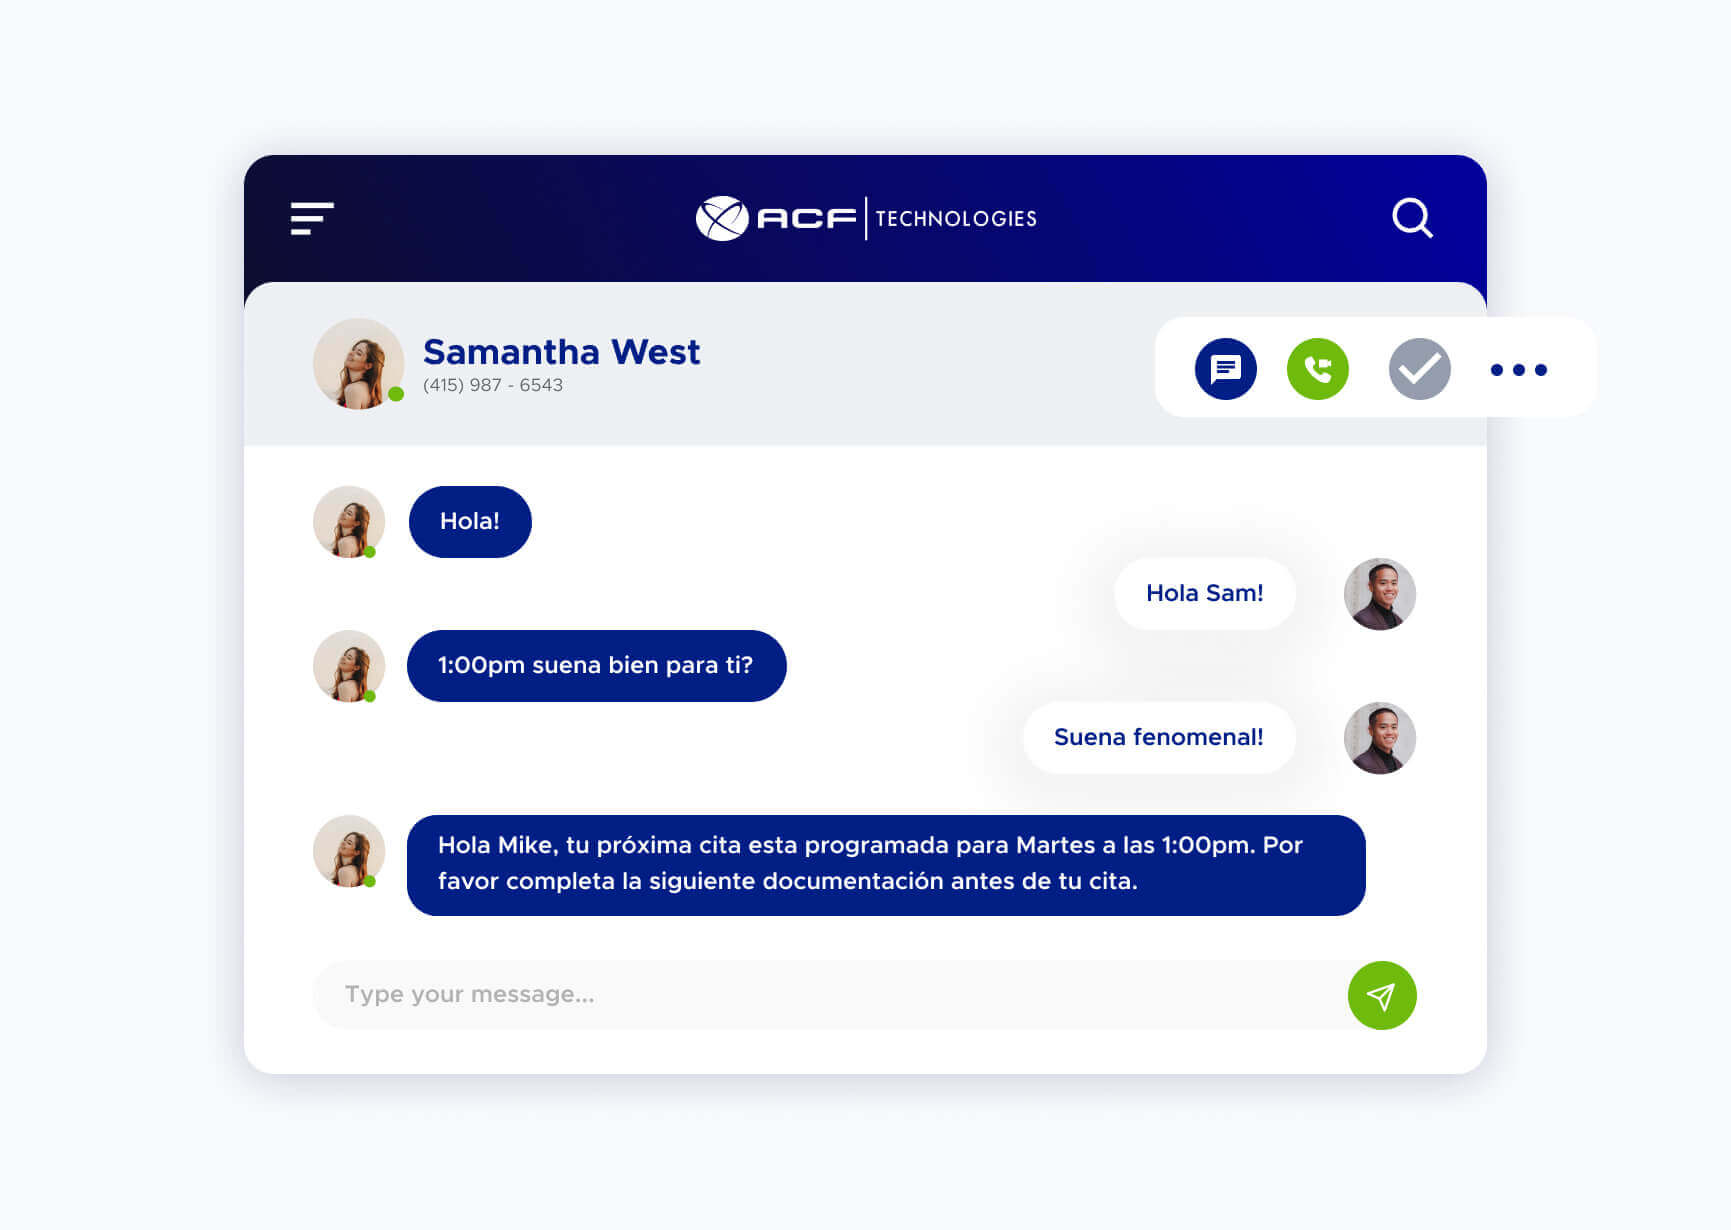 Simulación de un chat utilizando la plataforma de ACF Technologies